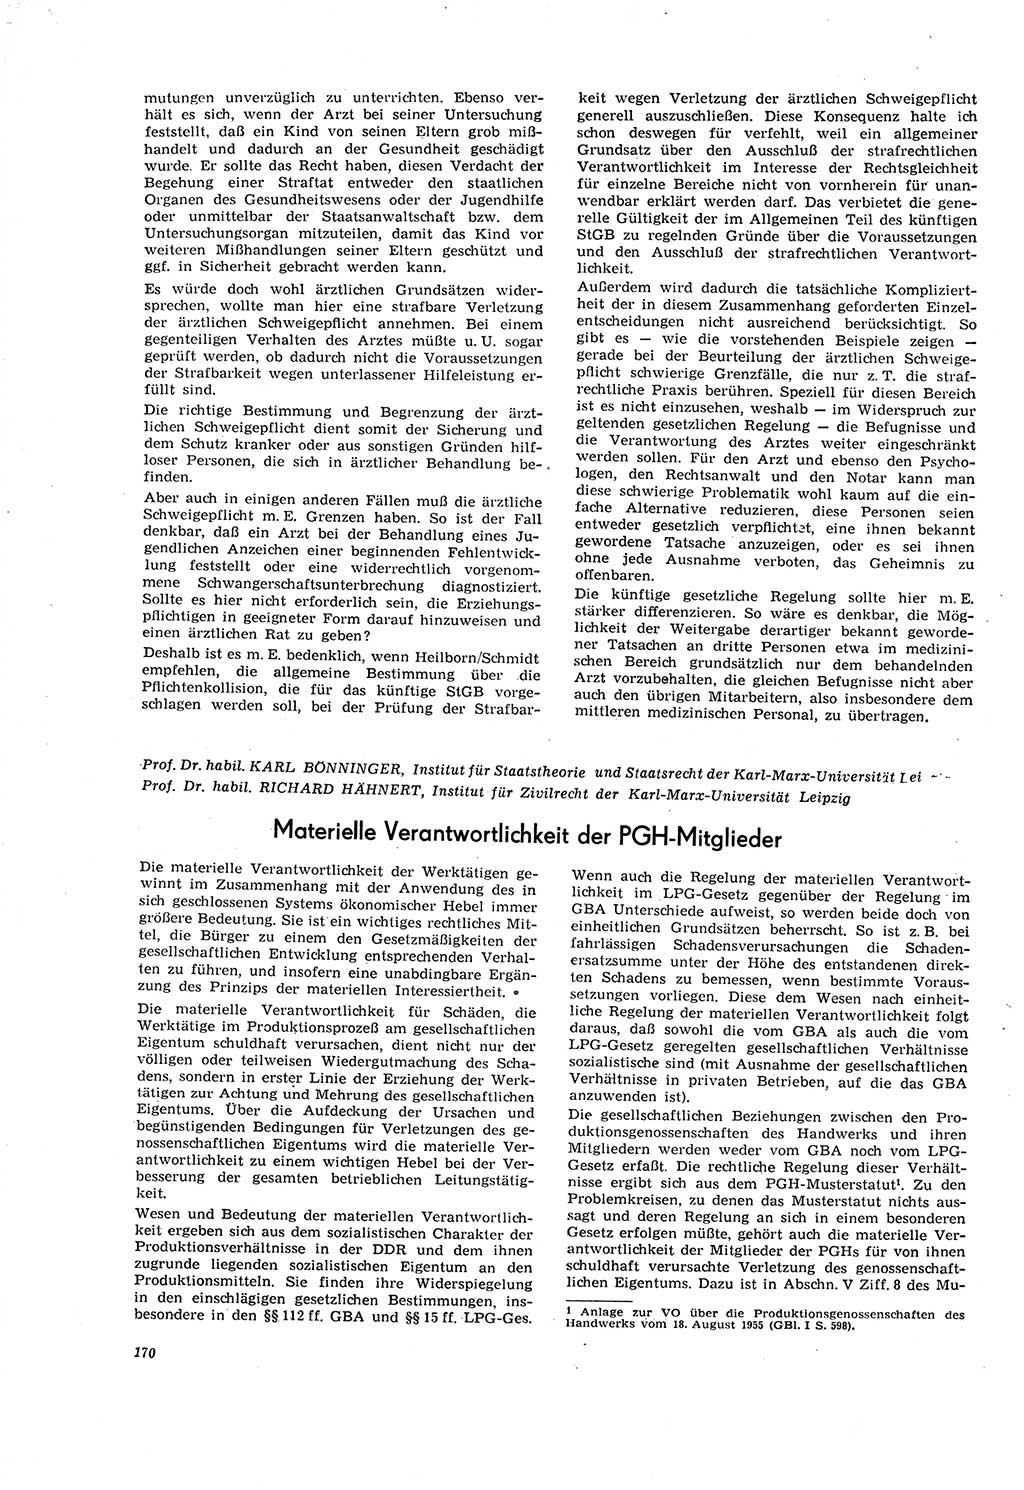 Neue Justiz (NJ), Zeitschrift für Recht und Rechtswissenschaft [Deutsche Demokratische Republik (DDR)], 20. Jahrgang 1966, Seite 170 (NJ DDR 1966, S. 170)